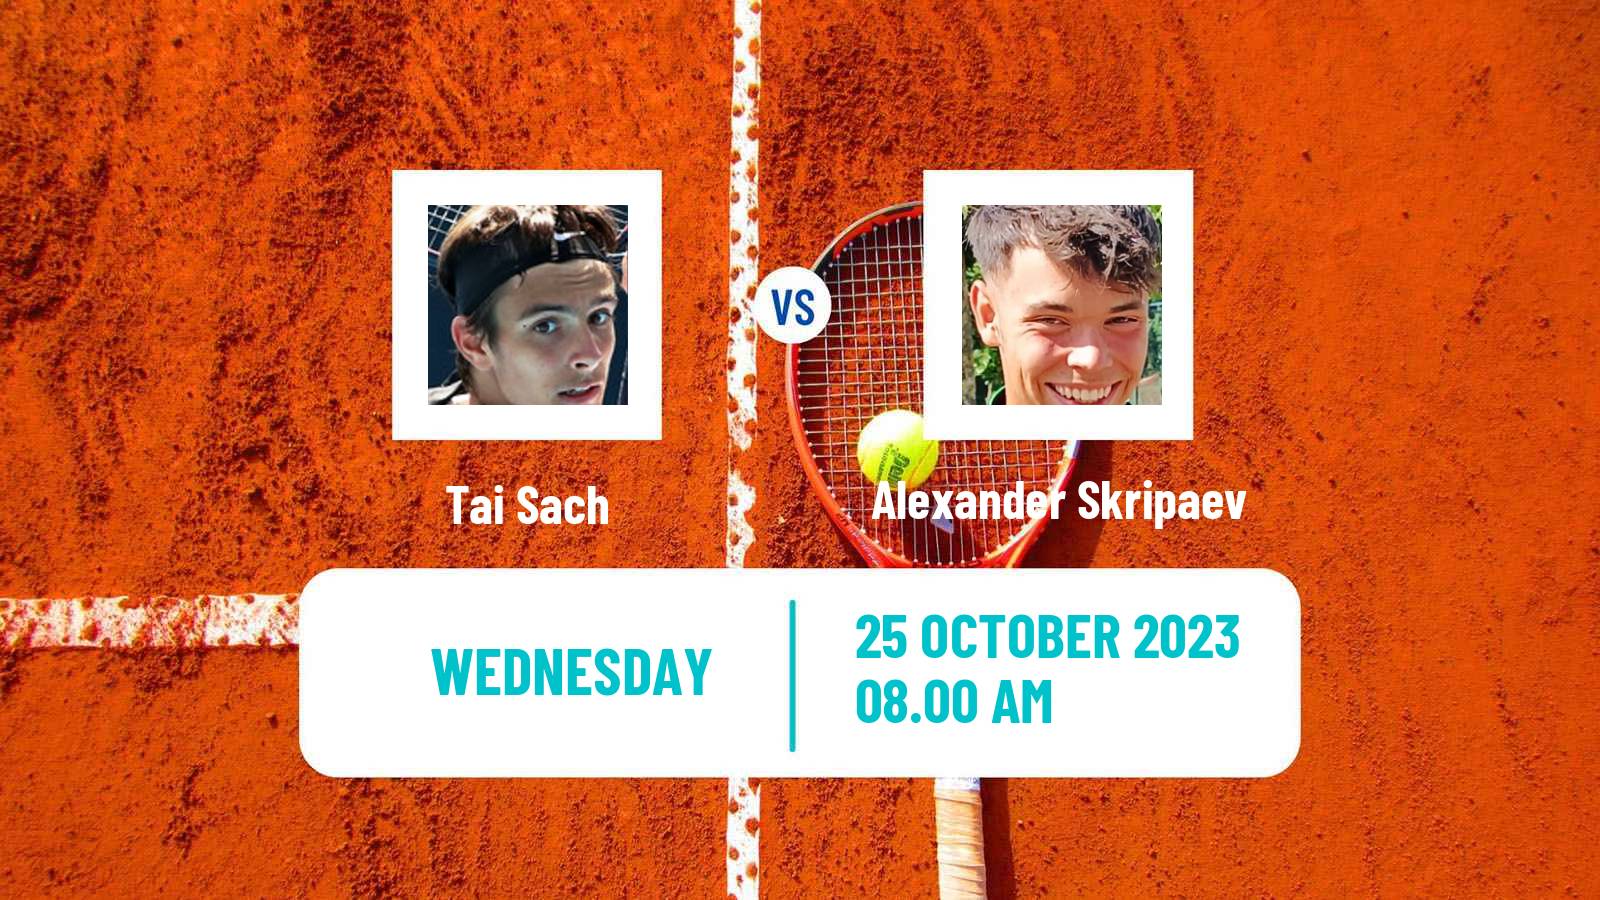 Tennis ITF M15 Sharm Elsheikh 15 Men Tai Sach - Alexander Skripaev